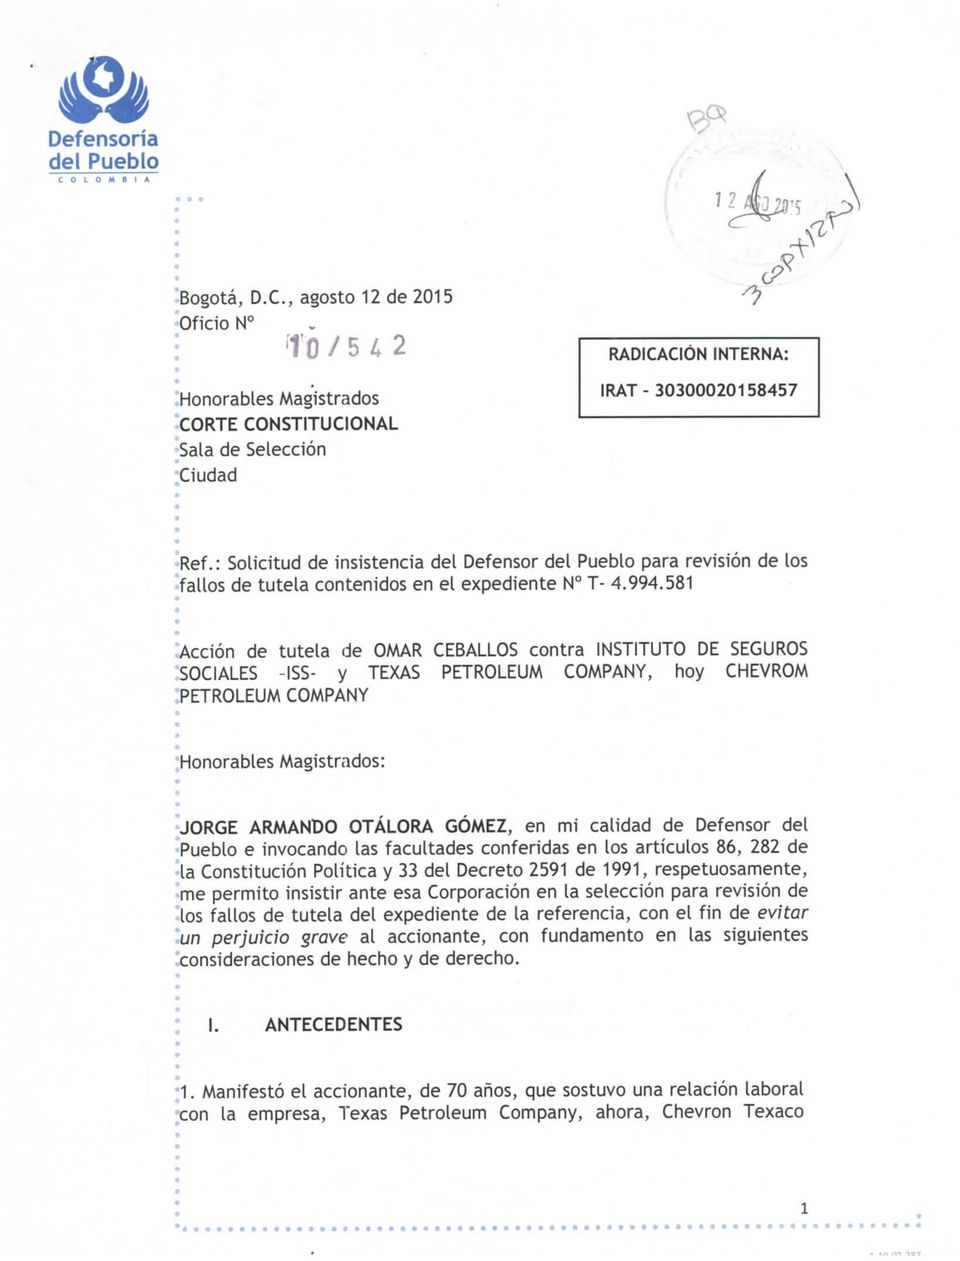 581 "Acción de tutela de OMAR CEBALLOS contra INSTITUTO DE SEGUROS SOCIALES -ISS- y TEXAS PETROLEUM COMPANY, hoy CHEVROM.